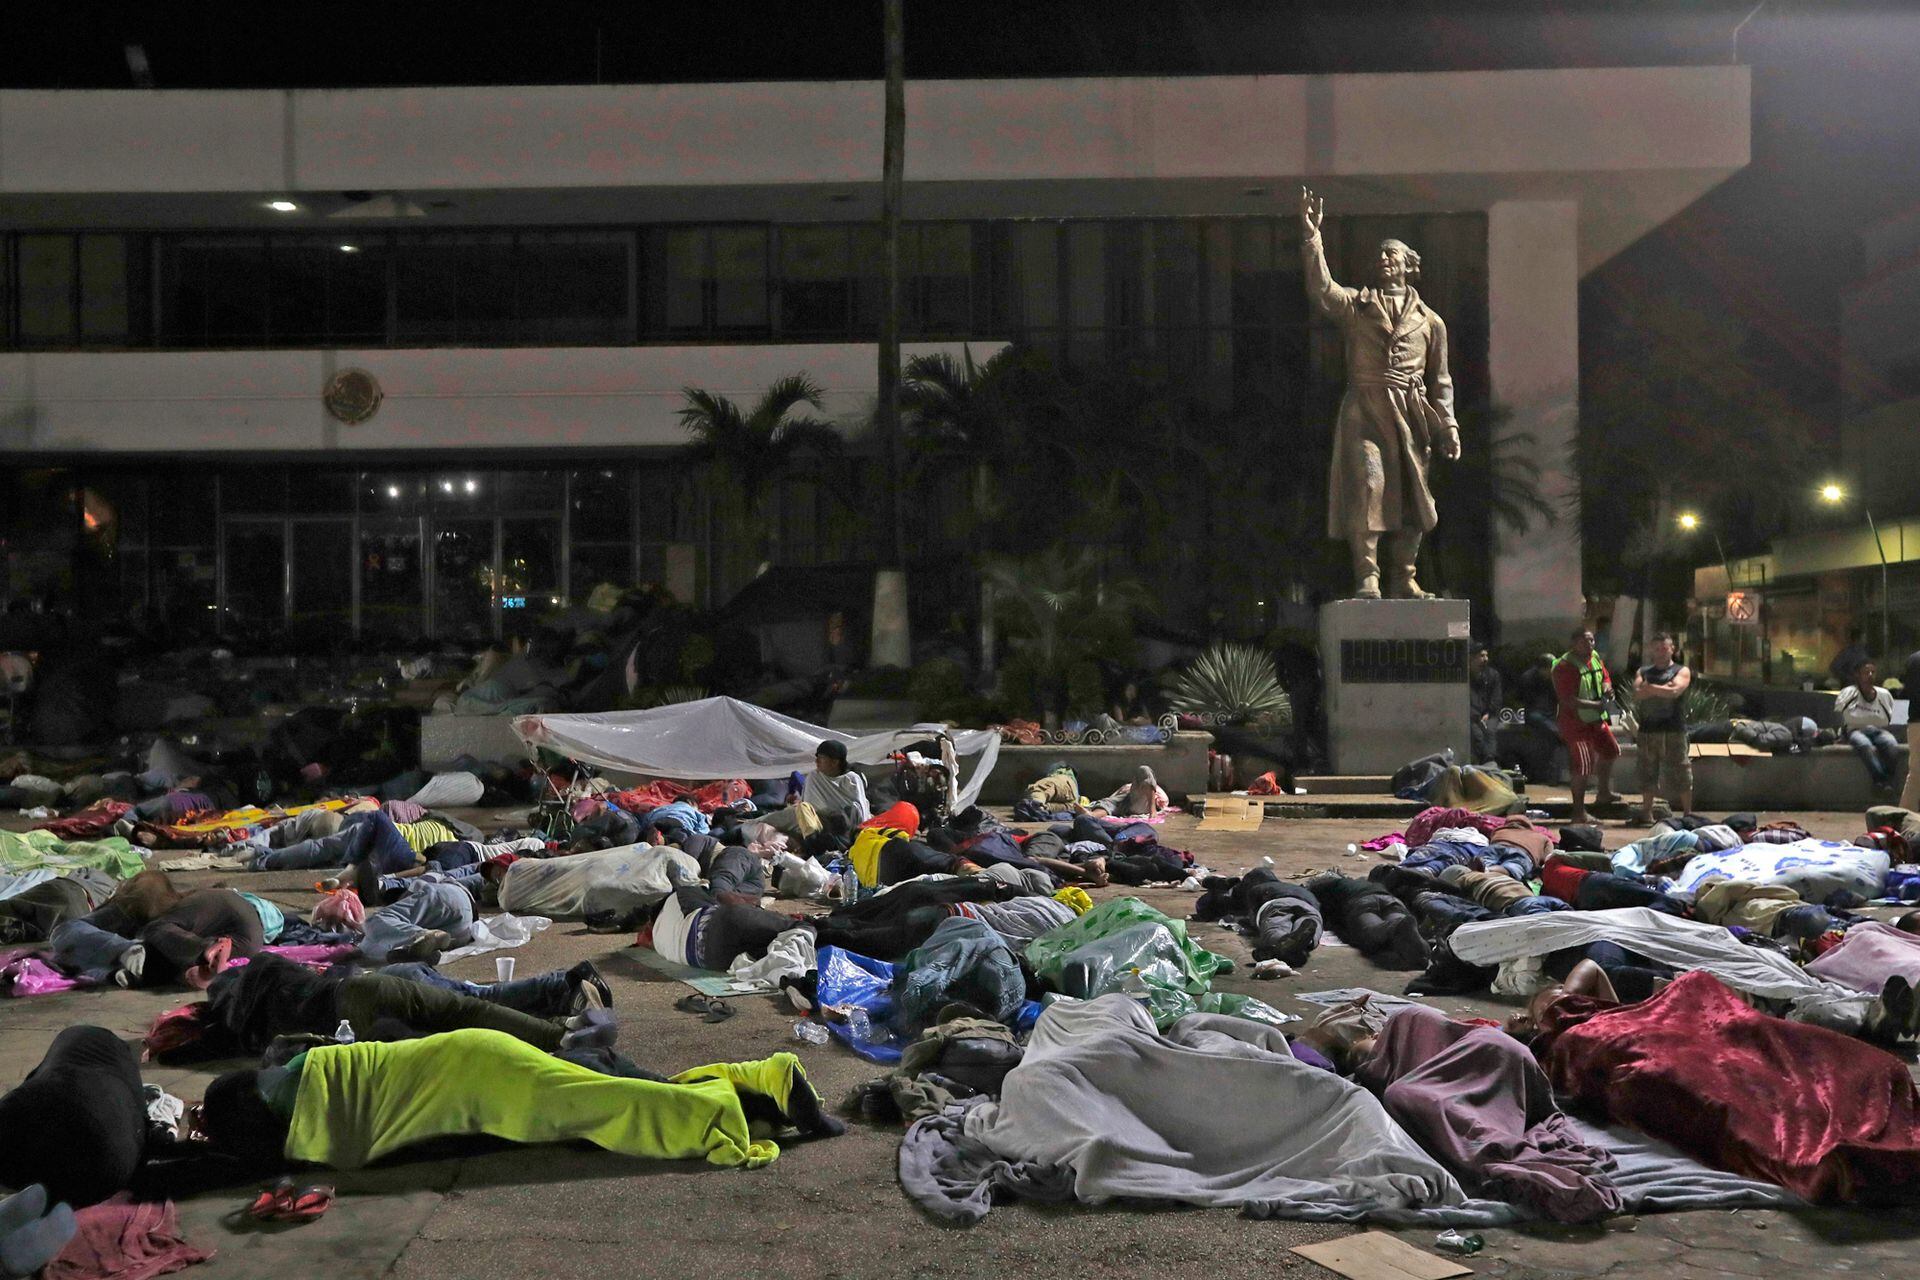 Los migrantes hondureños duermen en la ciudad de Tapachula, en una plaza pública con una estatua del héroe nacional mexicano Miguel Hidalgo, un sacerdote que lanzó la Guerra de Independencia de México en 1810